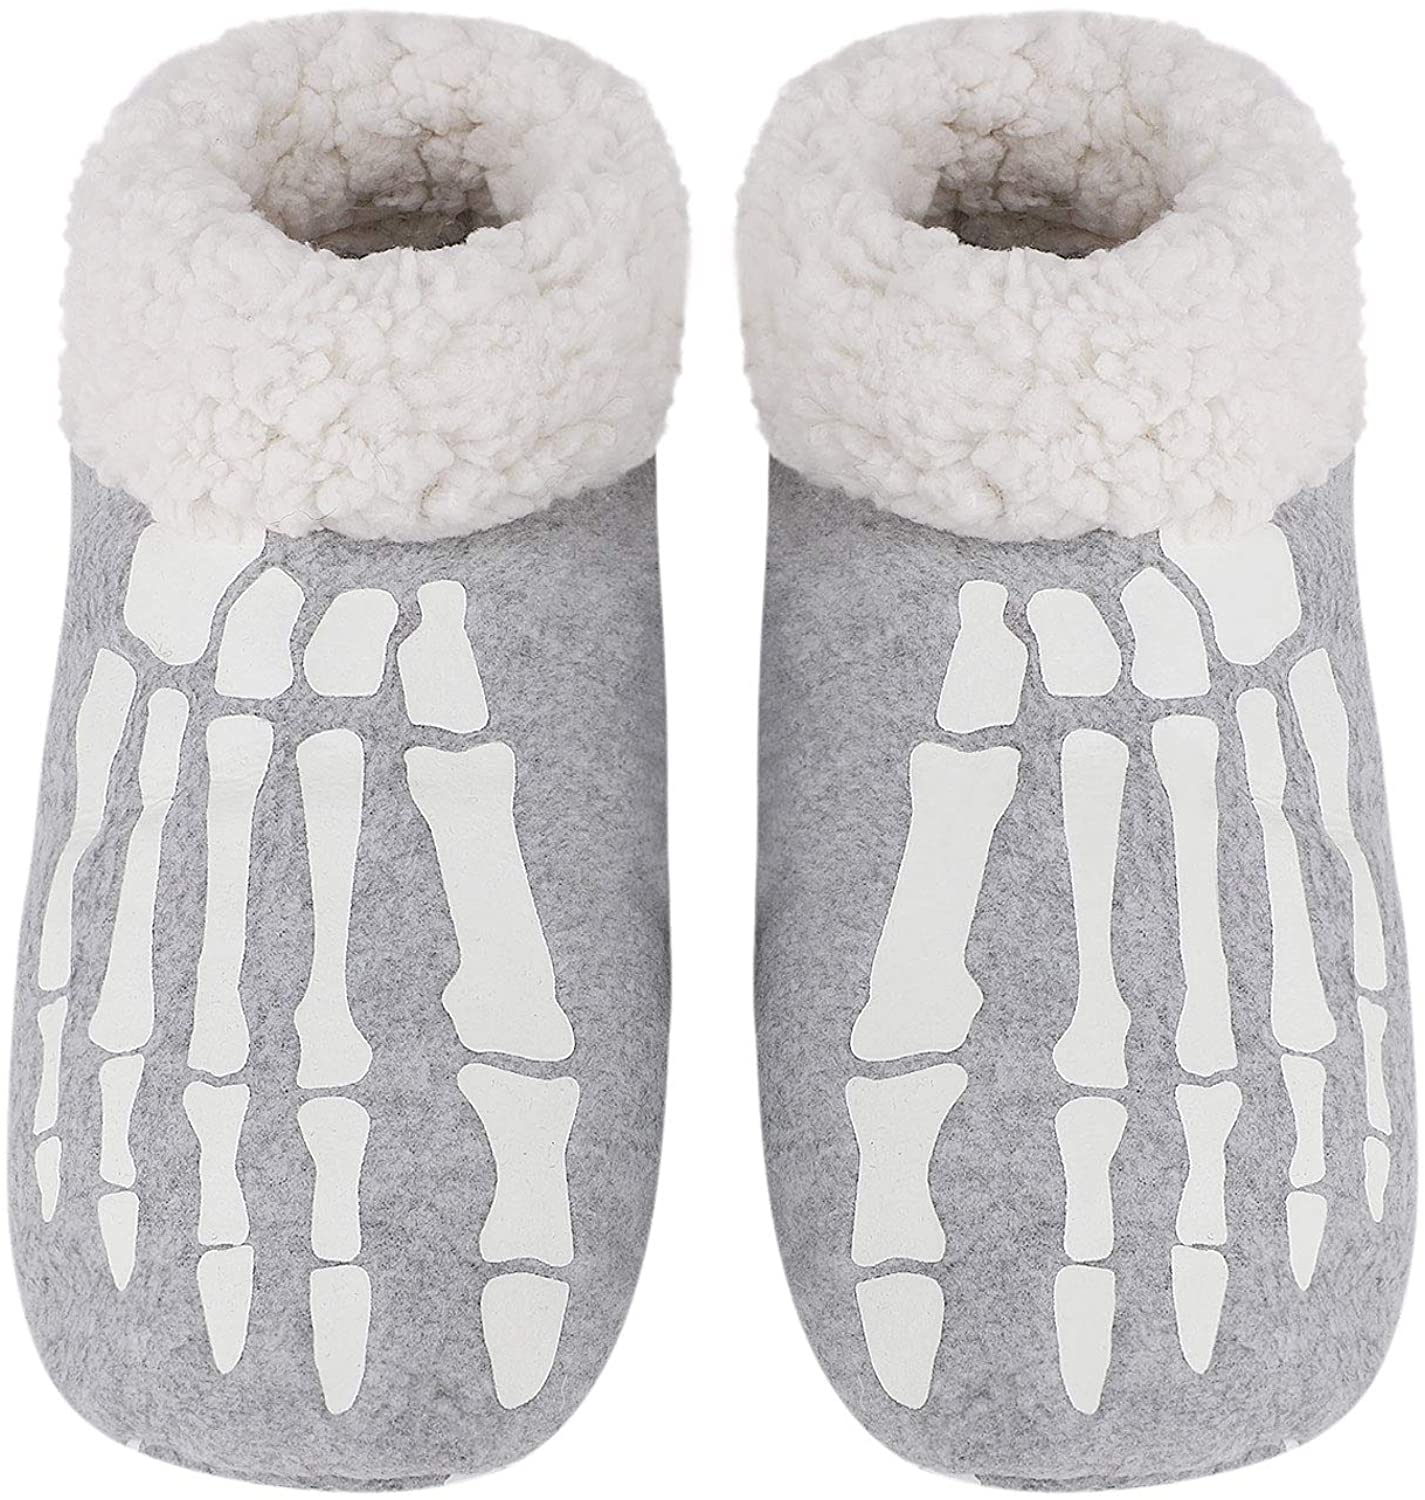 Indoor Warm Fleece Slippers Cartoon Winter Soft Cozy Non-Slip Slippers